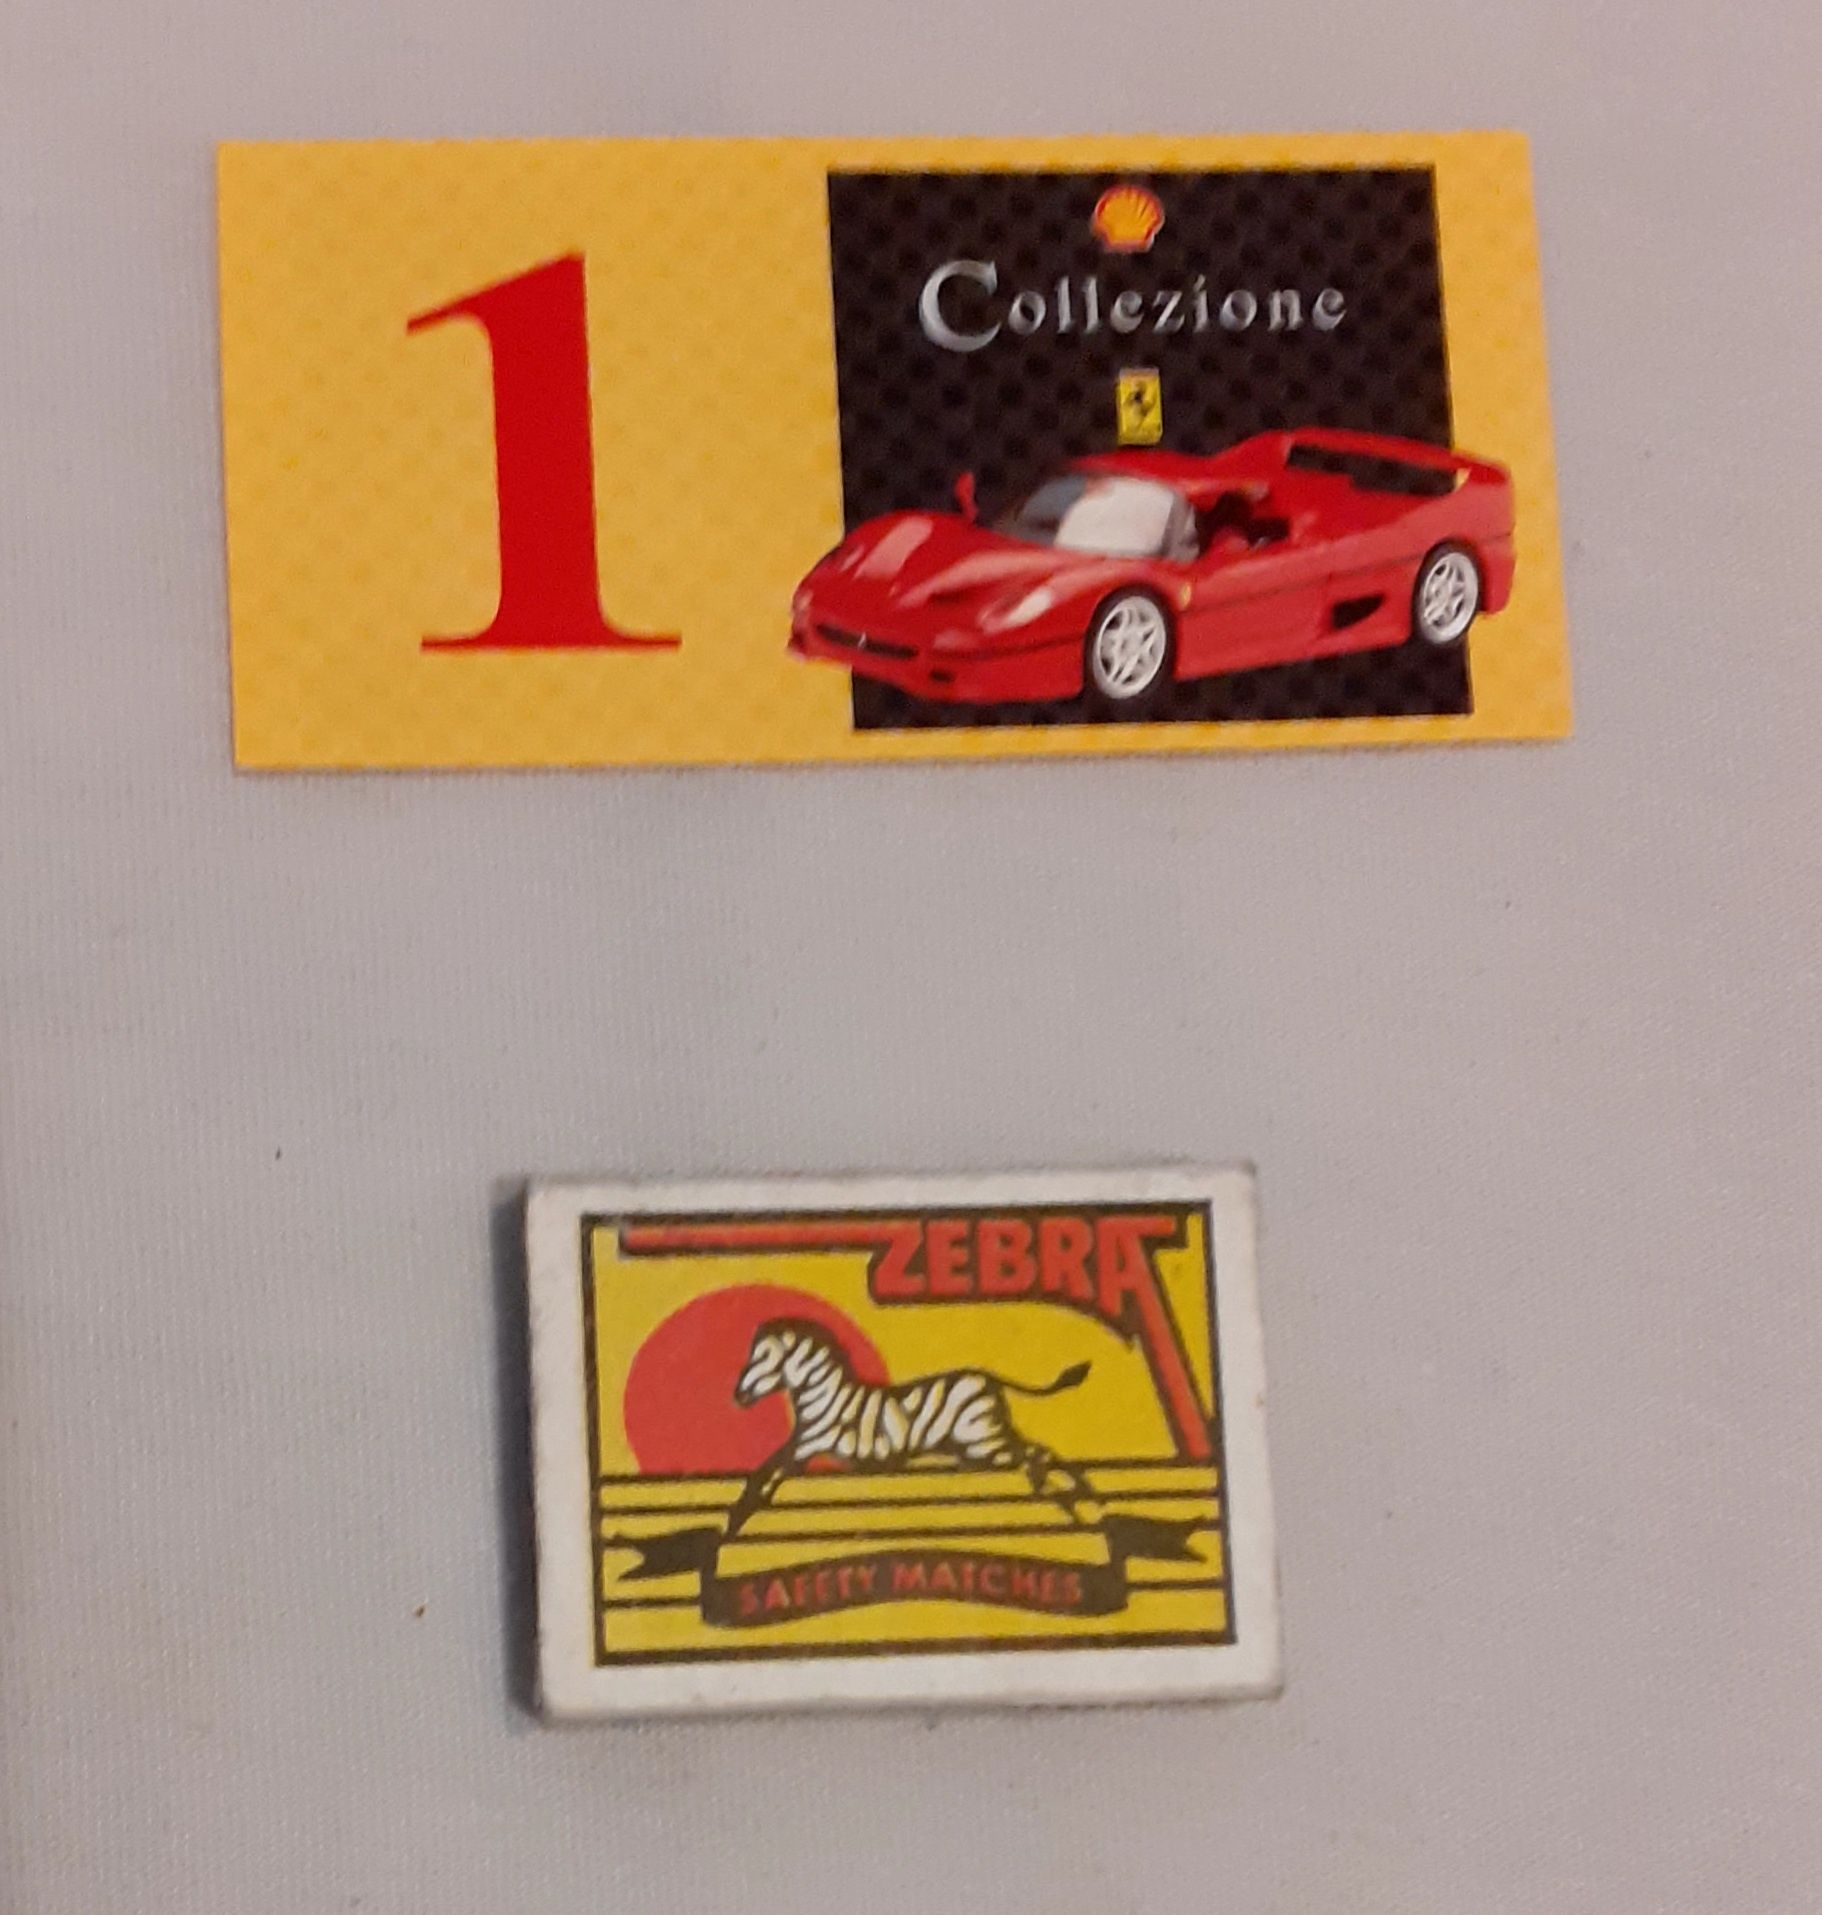 Картонче от Ferrari Shell Collezione 1997